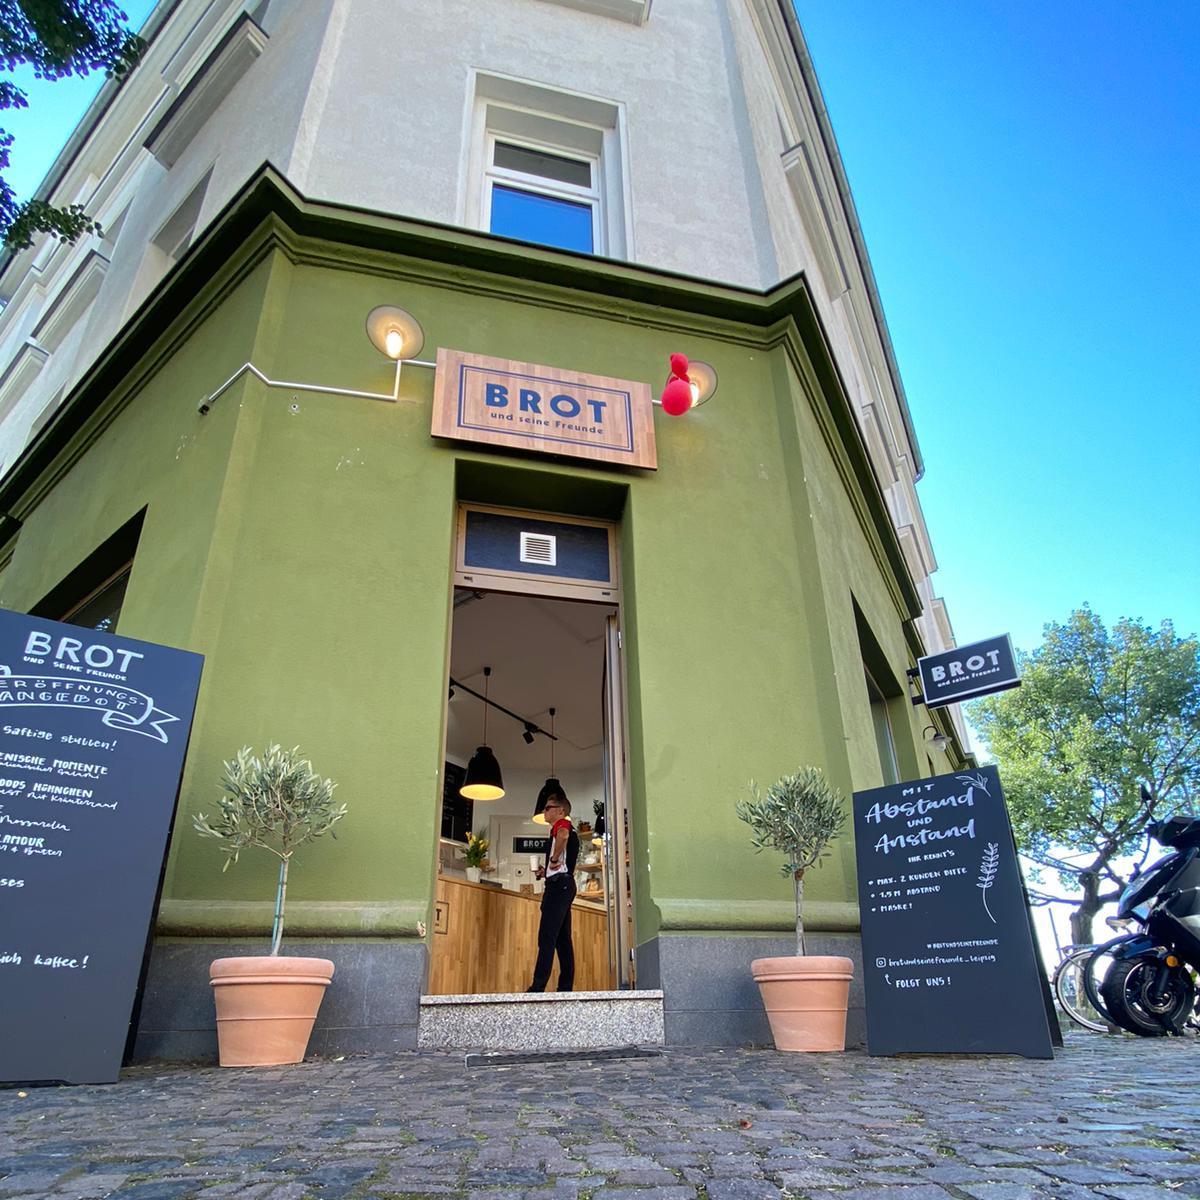 Restaurant "BROT und seine Freunde" in Leipzig